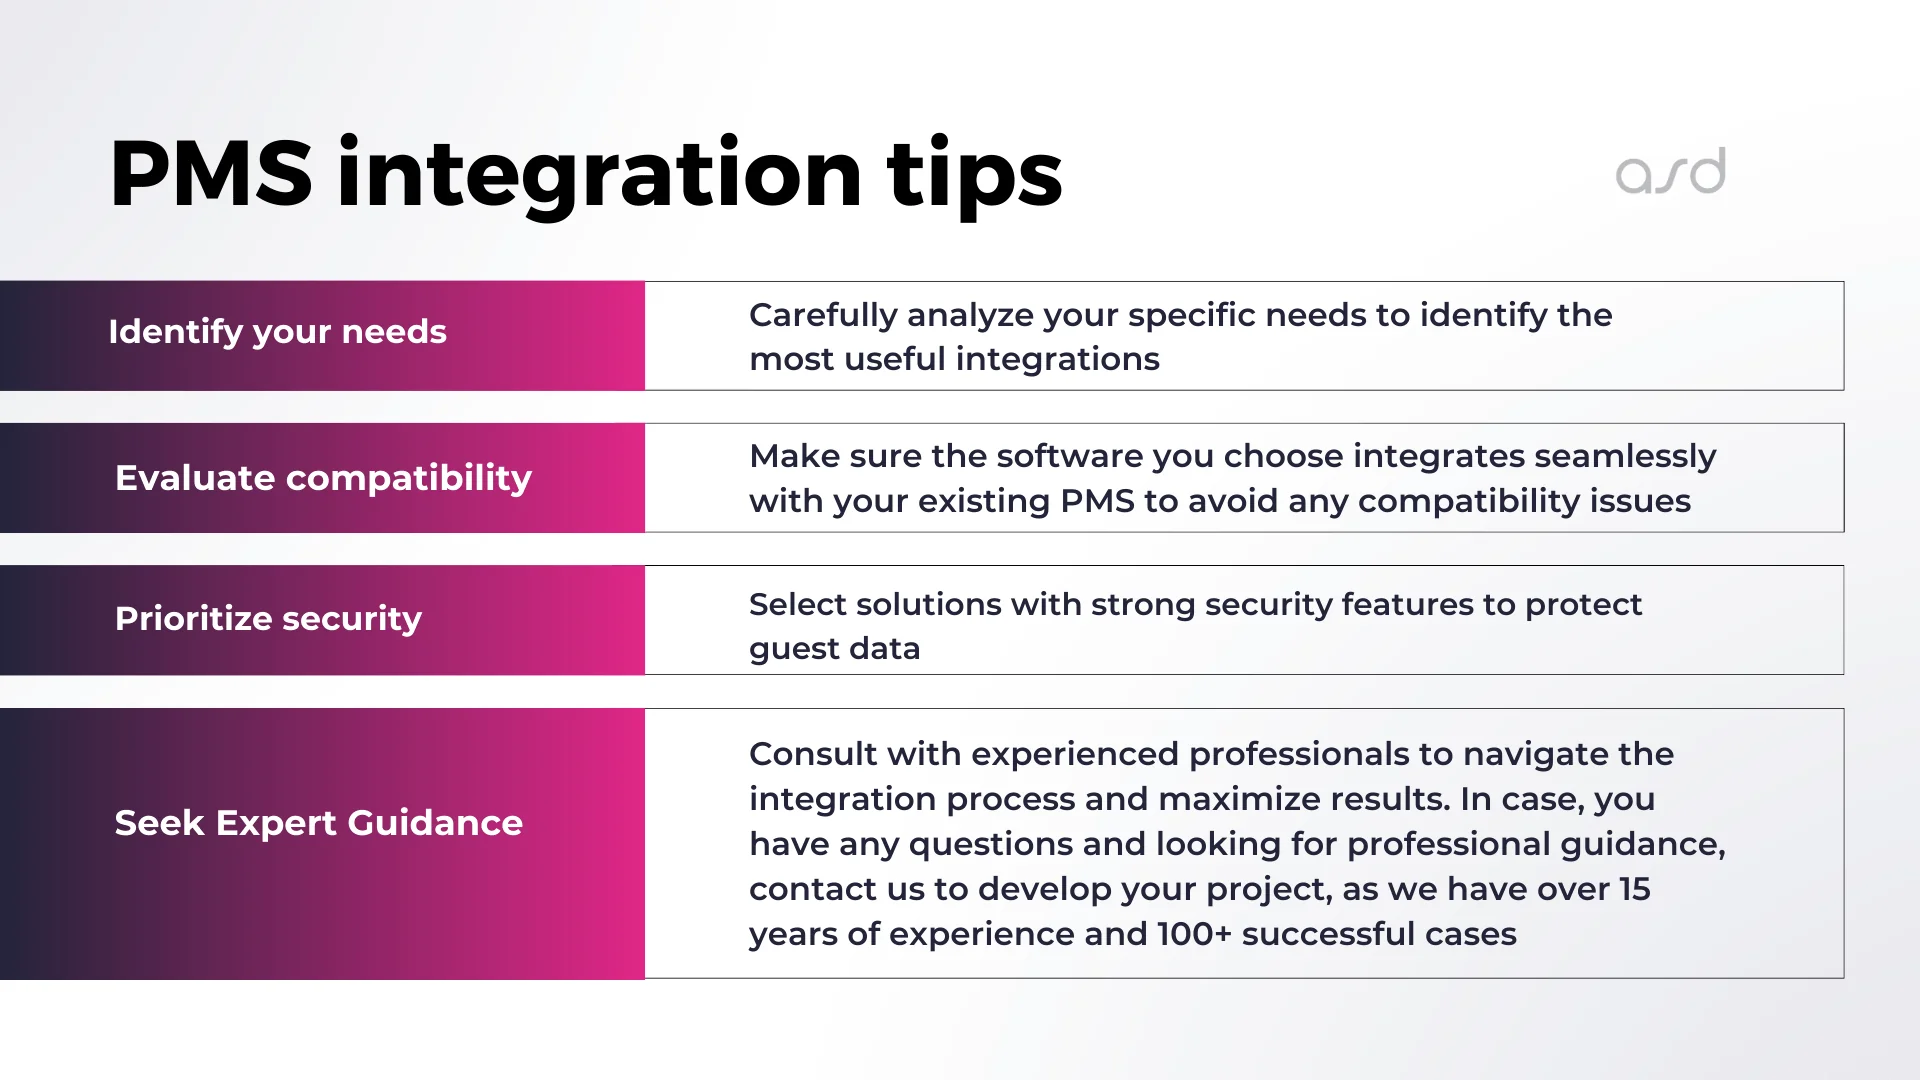 PMS integration tips (ASD Team)